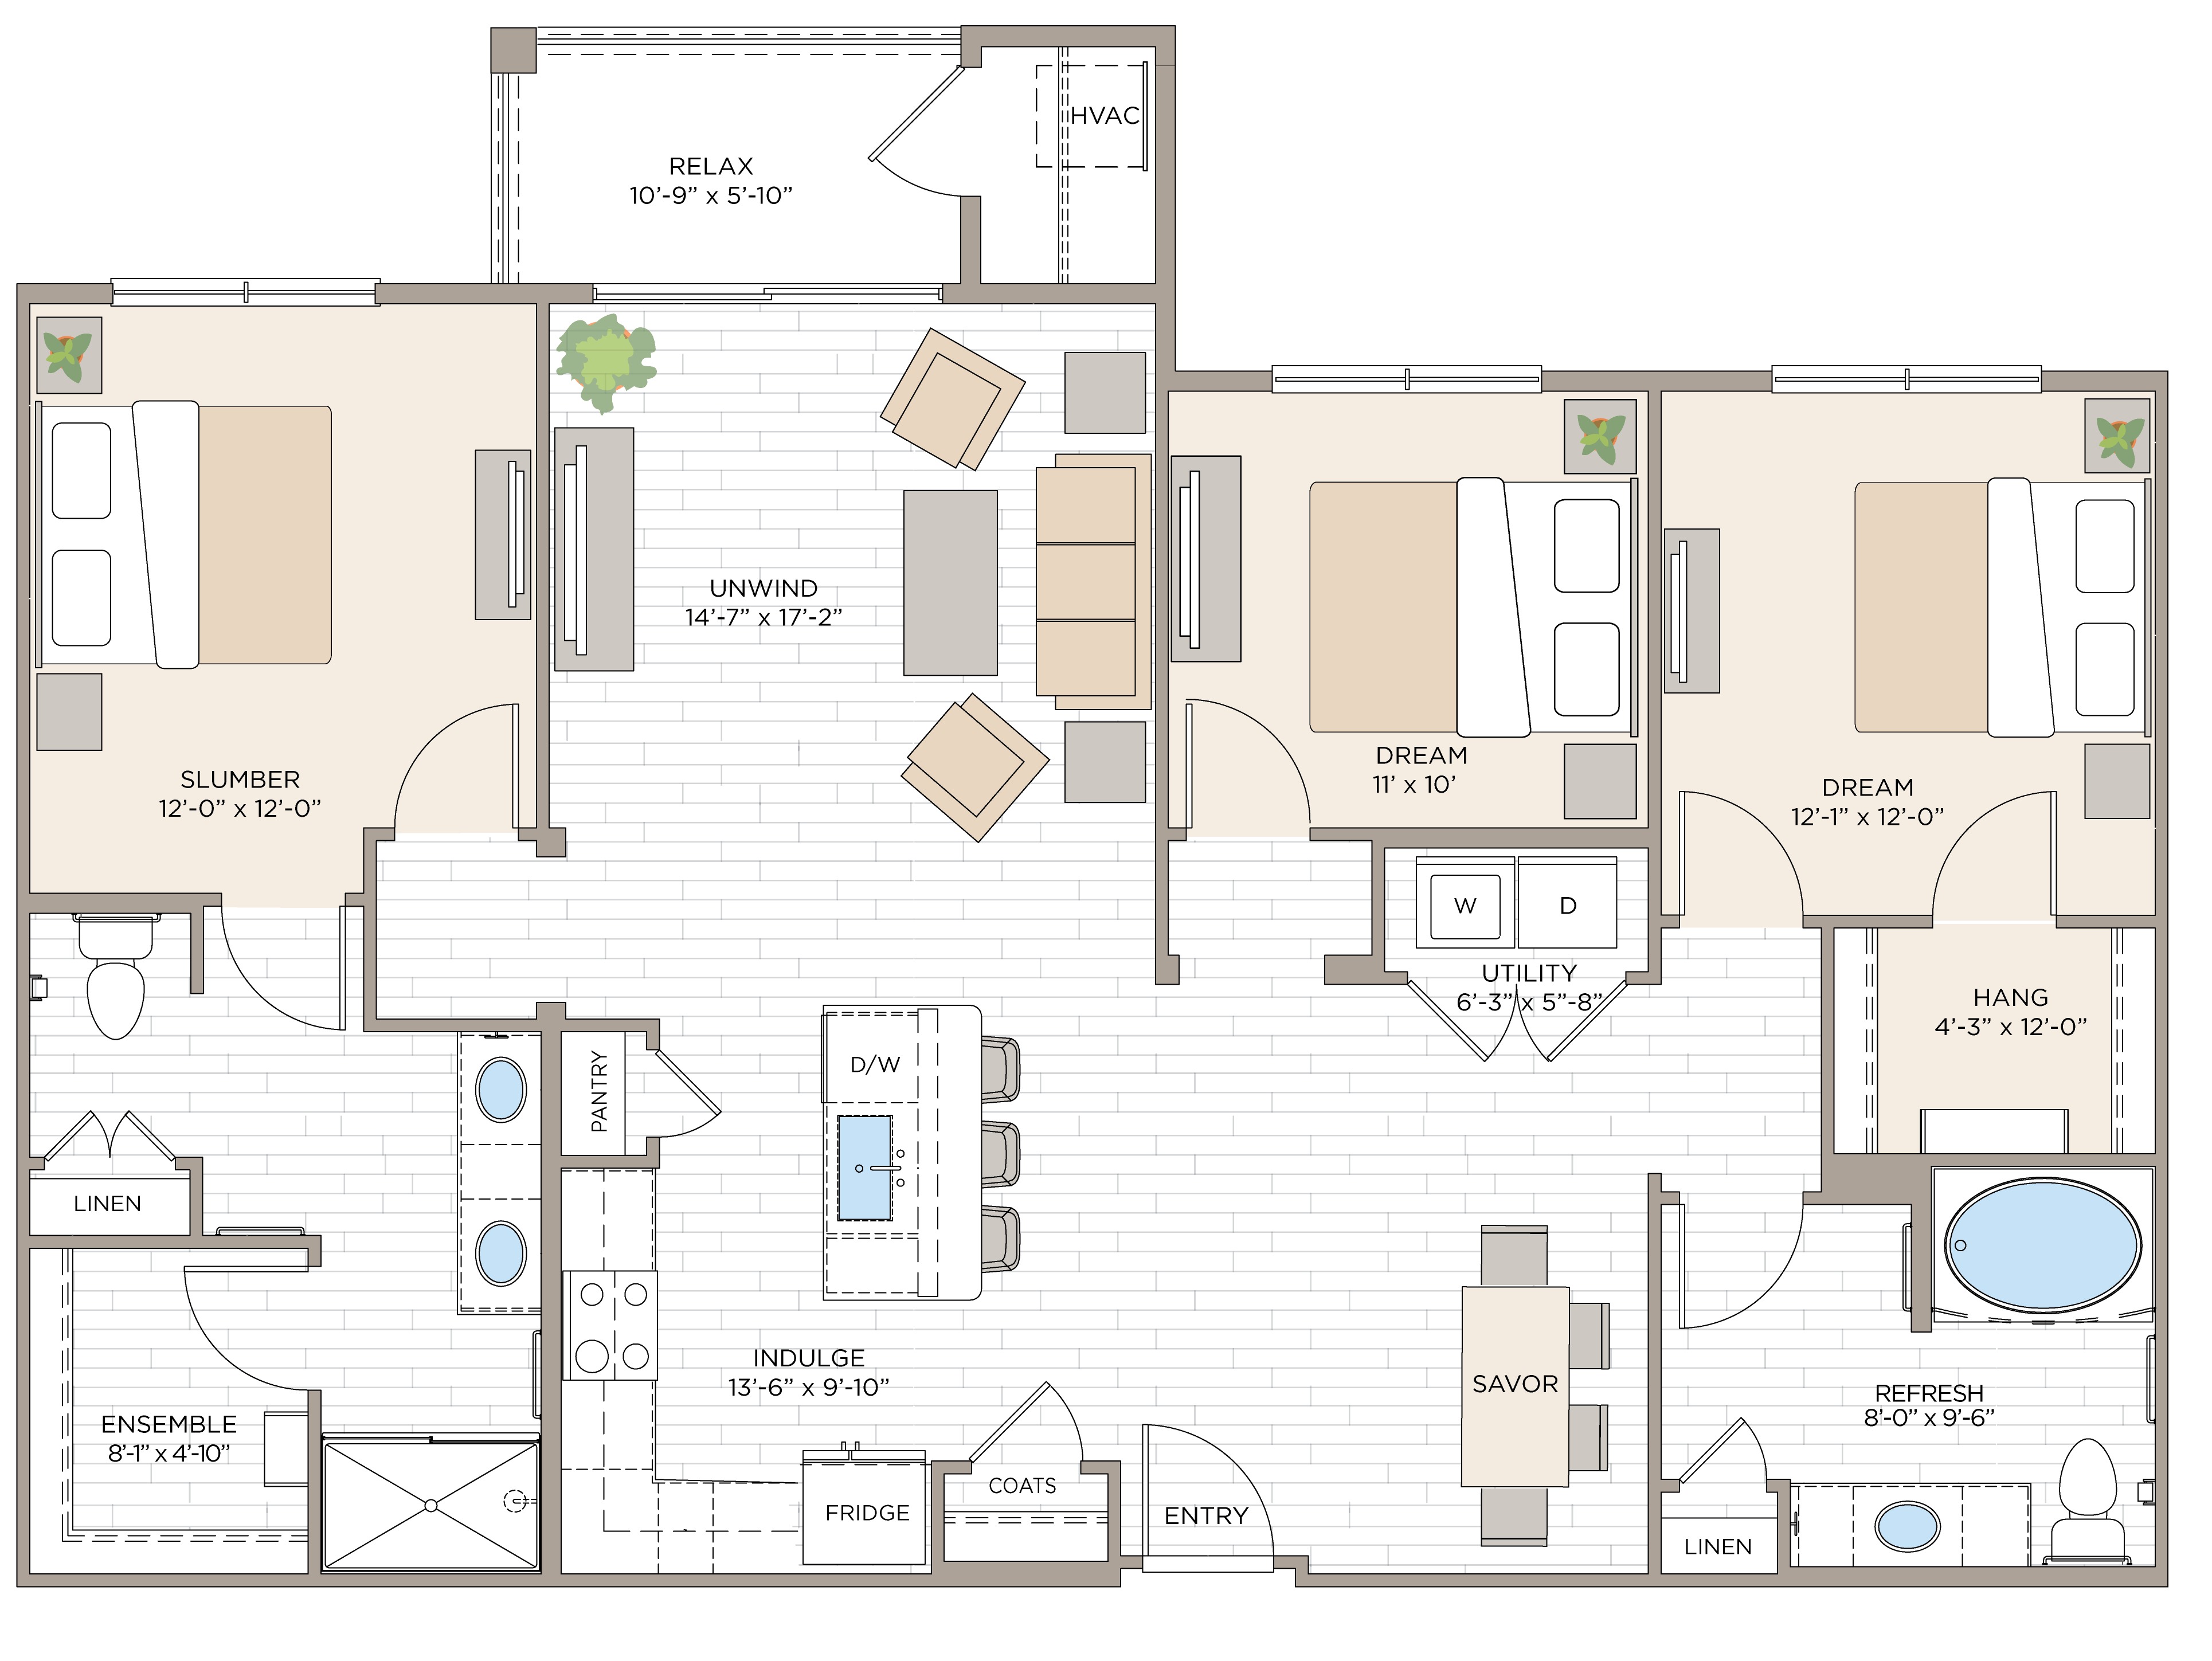 Floorplan for Unit #C2A, 2 + Den bedroom unit at Halstead Maynard Crossing